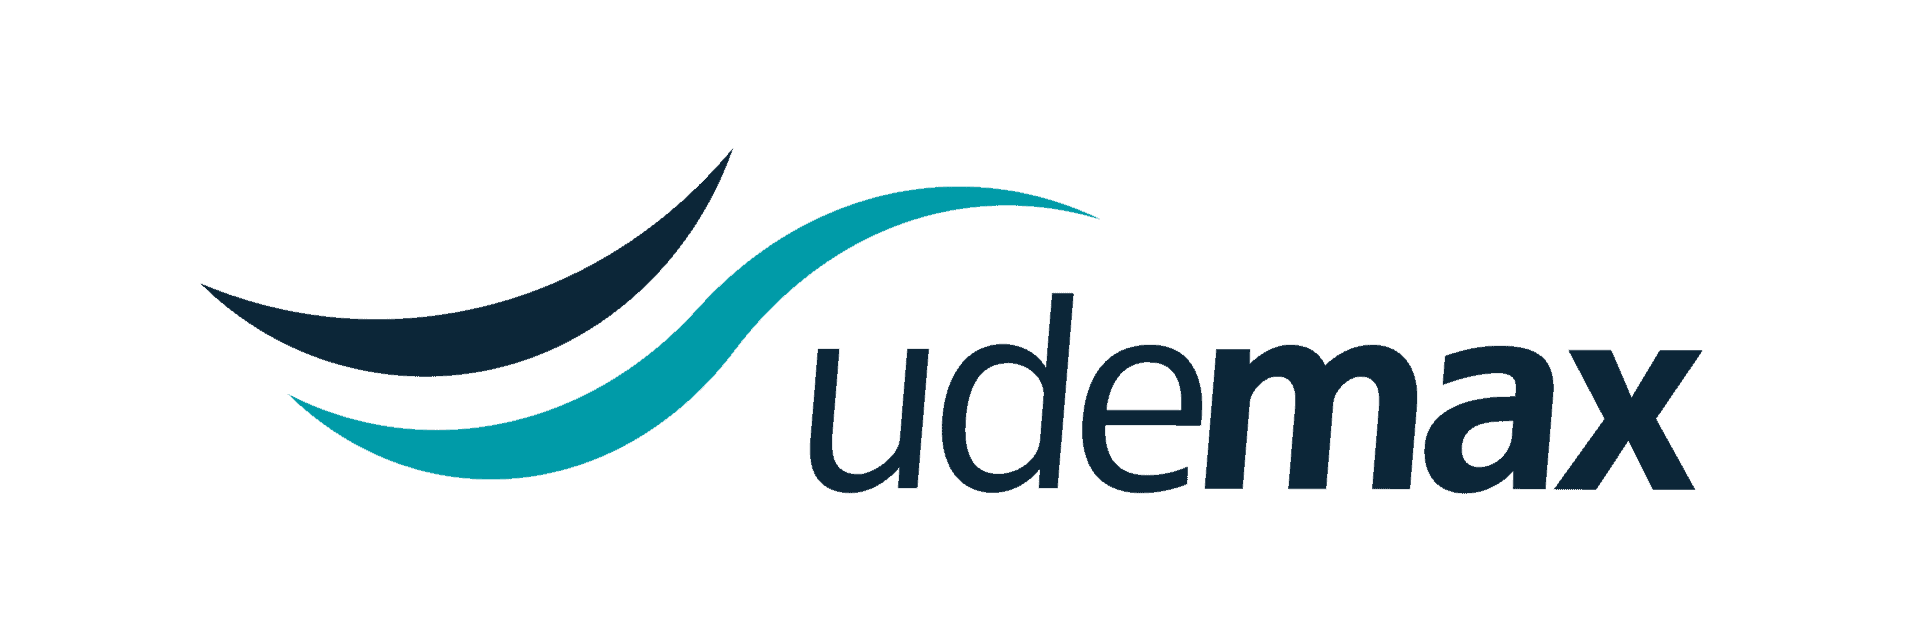 Logotipo Udemax